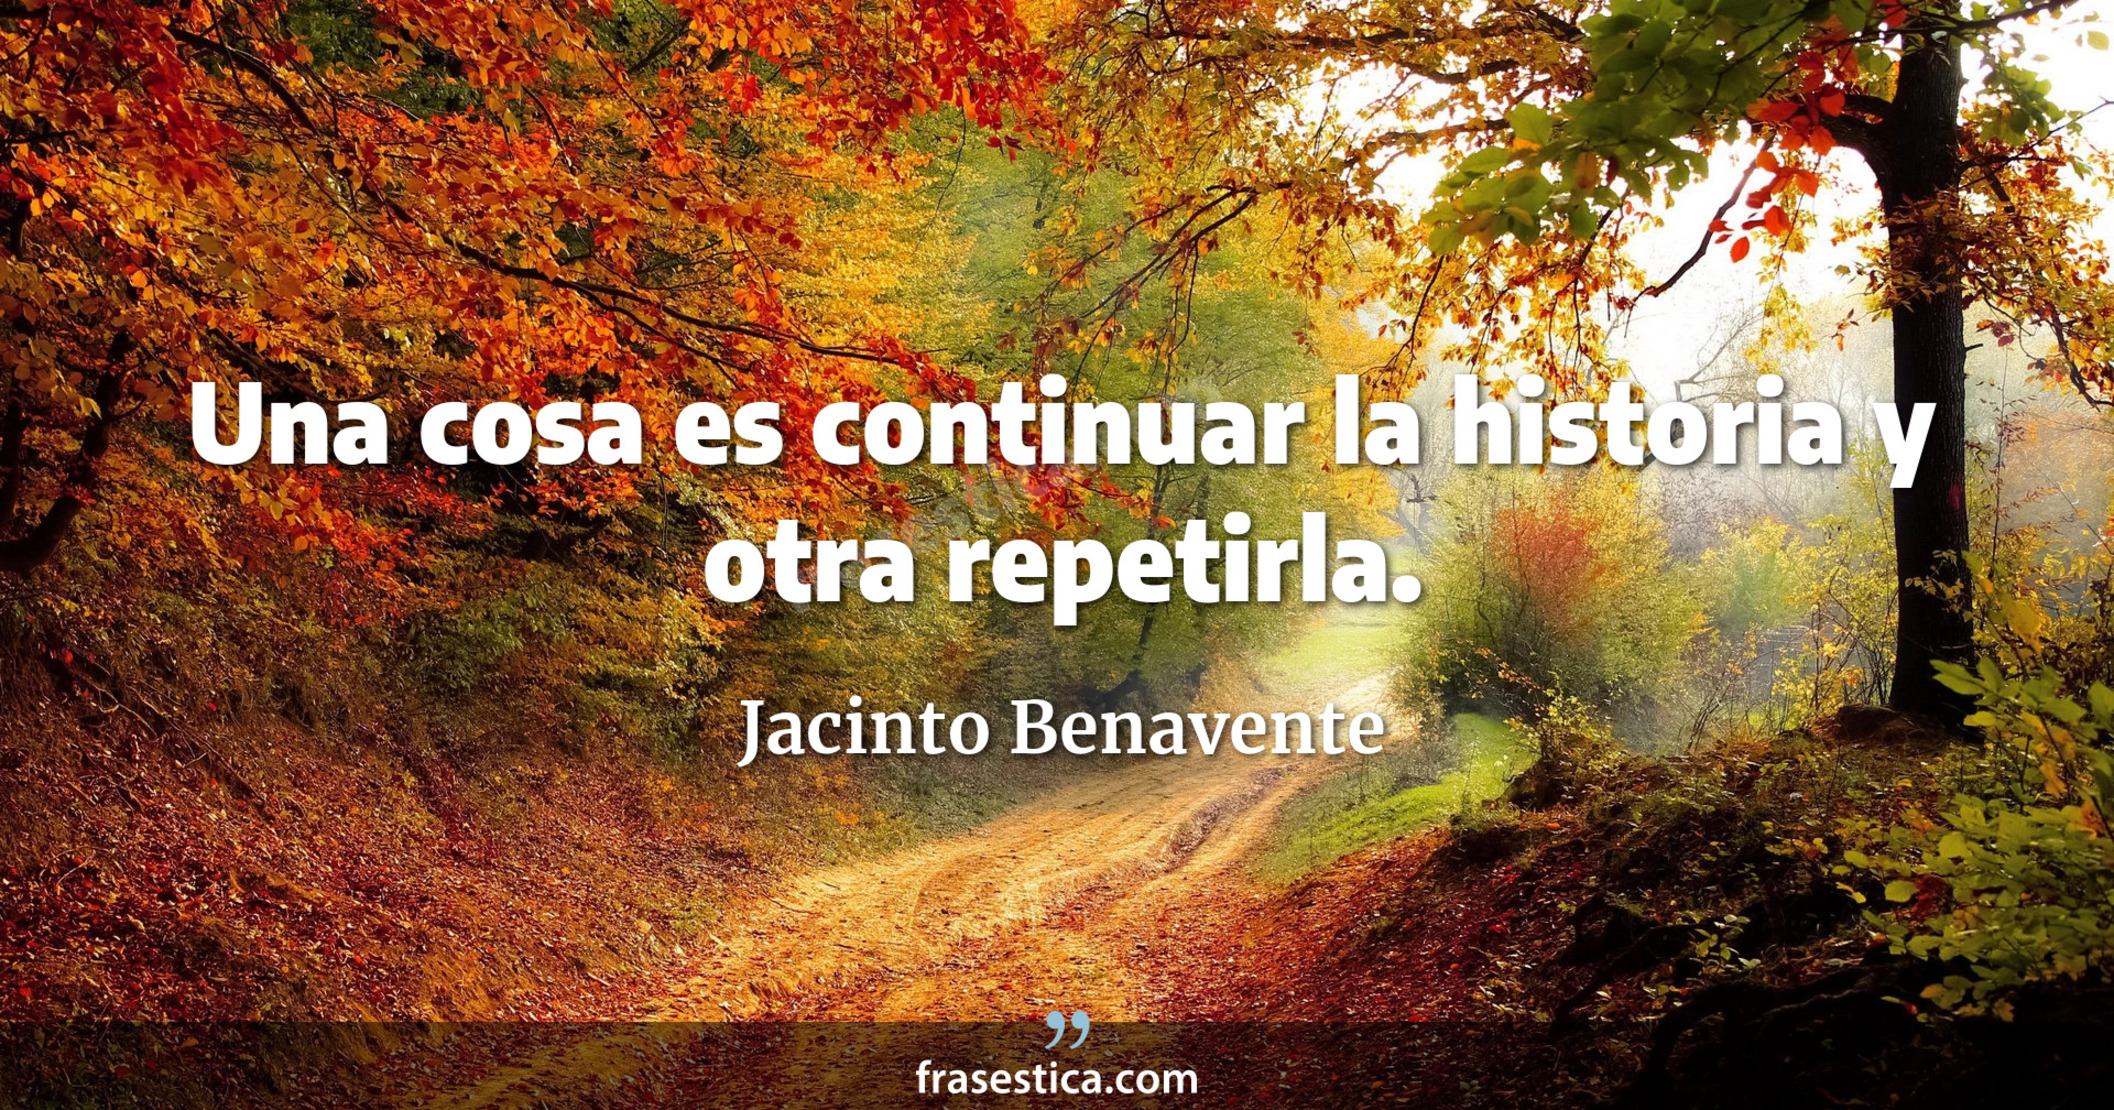 Una cosa es continuar la historia y otra repetirla. - Jacinto Benavente